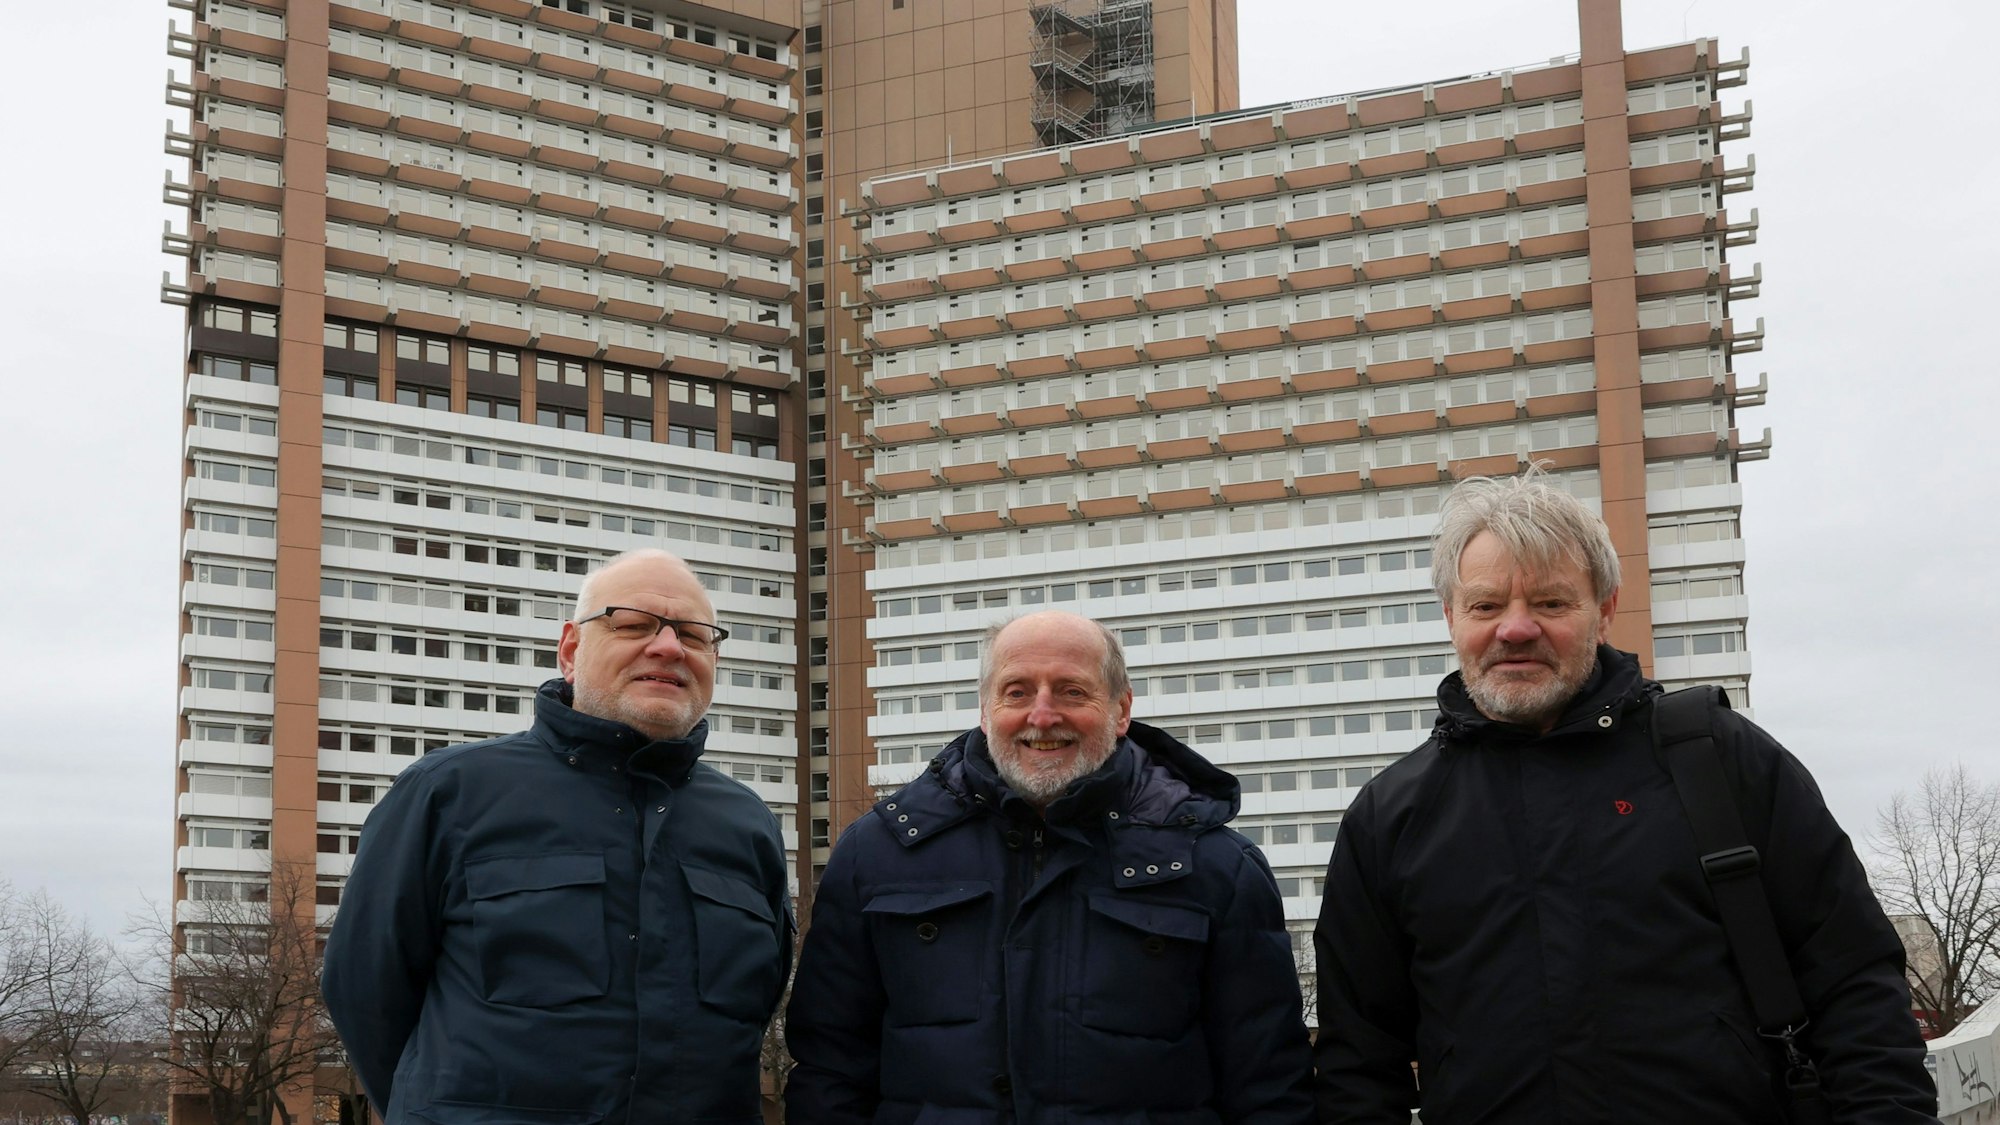 Jörg Frank, Helmut Röscheisen und Thomas Scheidler vor dem Kölner Justizgebäude an der Luxemburger Straße.